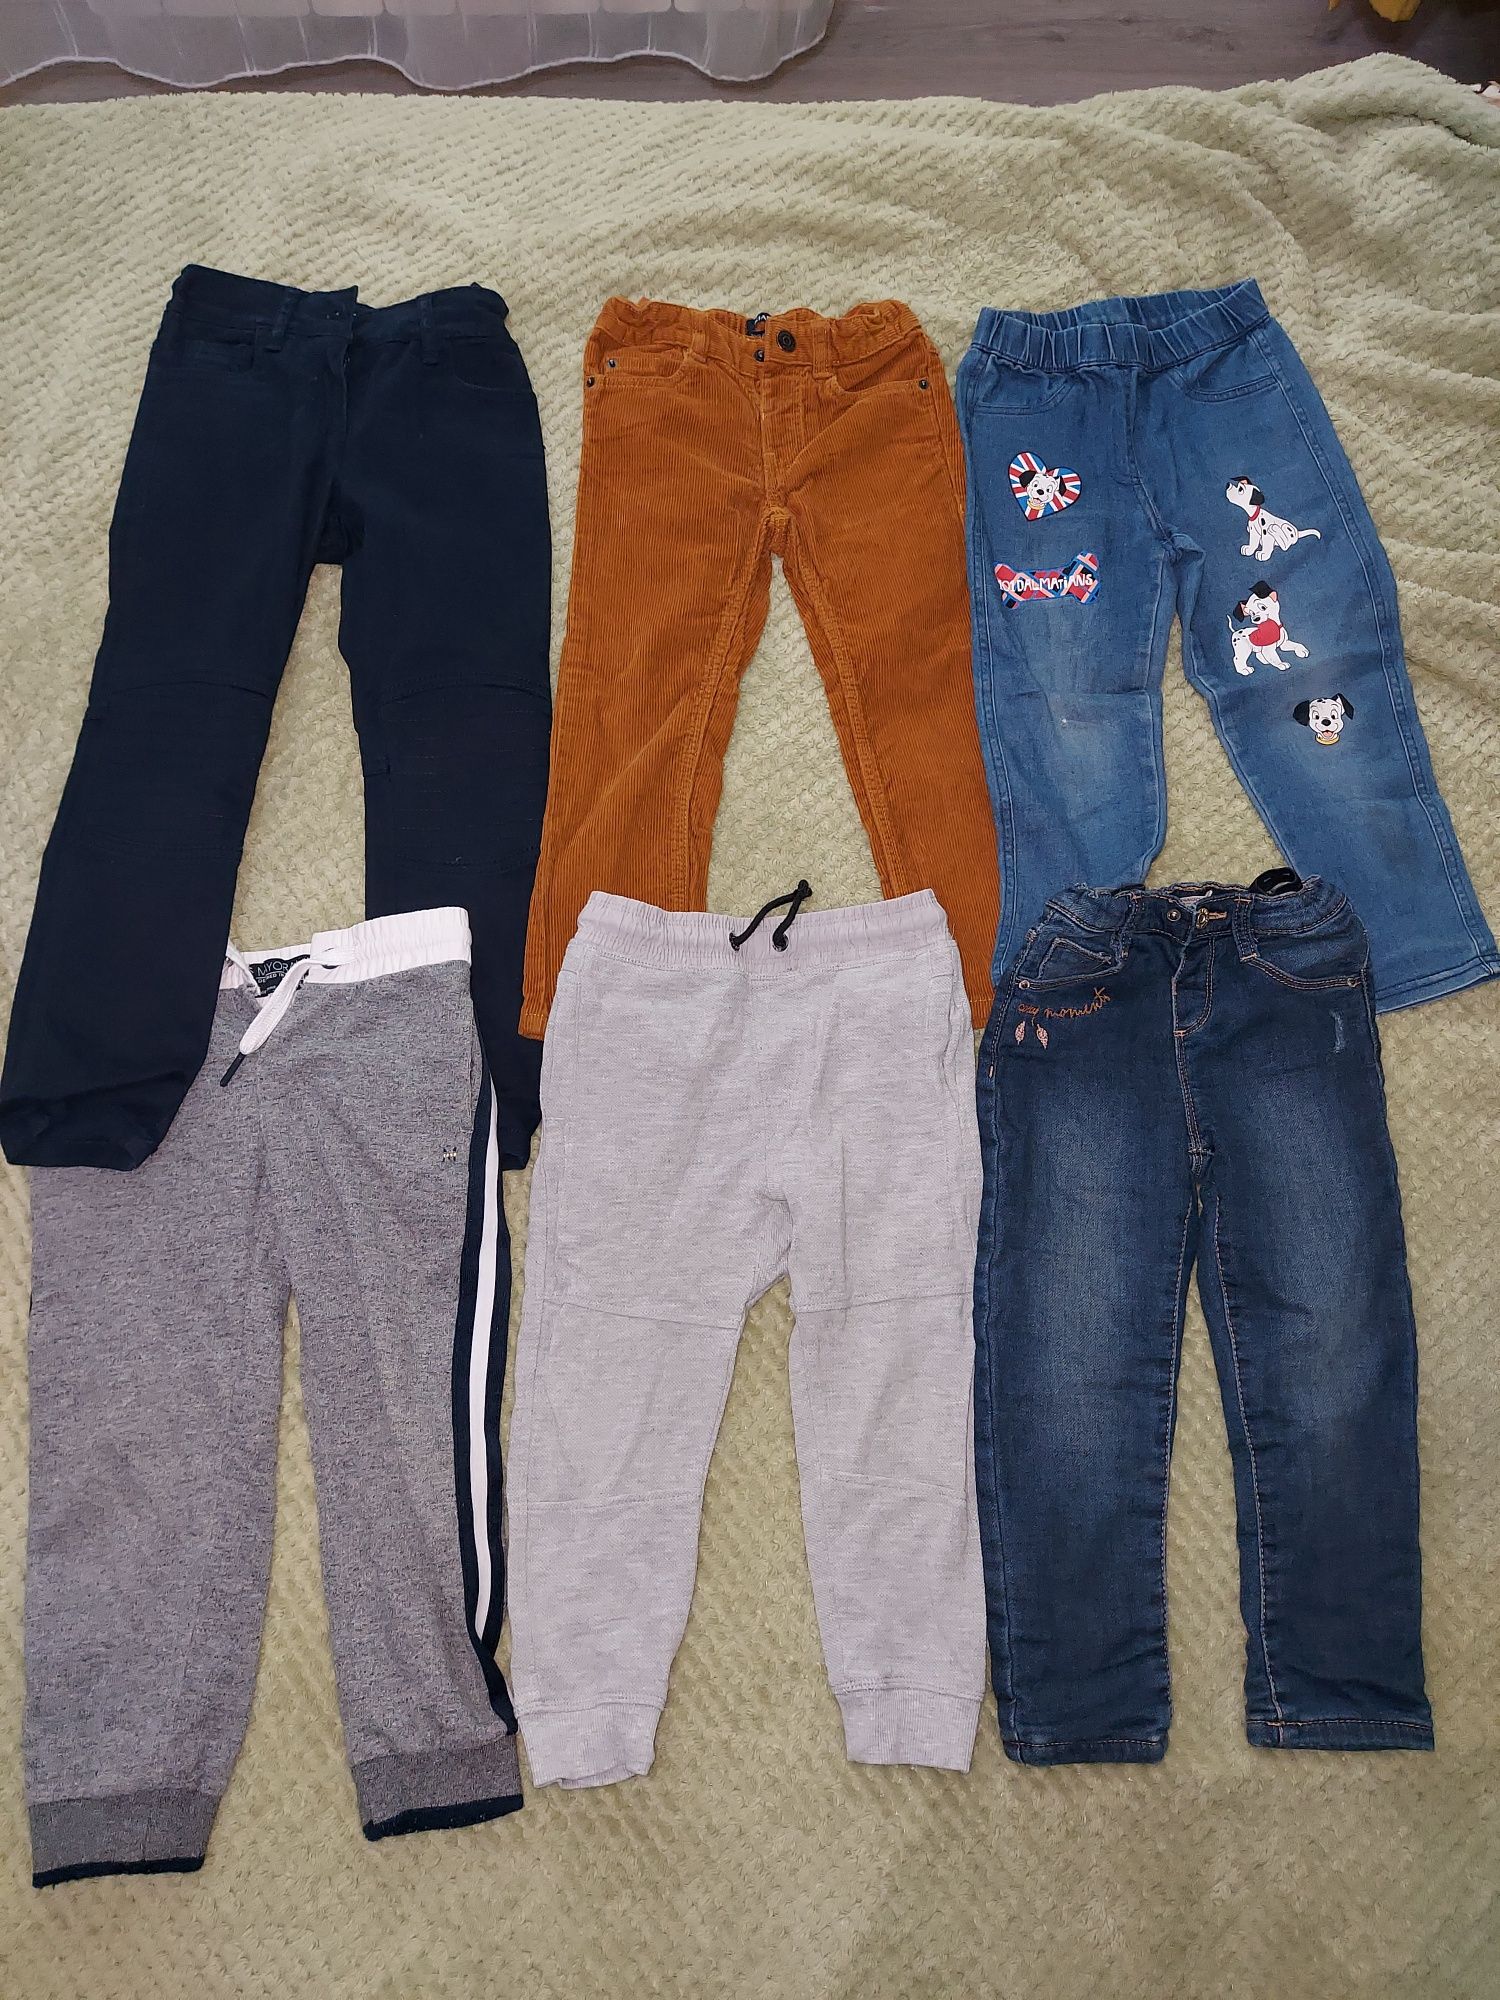 Pantaloni, pulovere, articole pentru băieți cu vârste între 3-5 ani